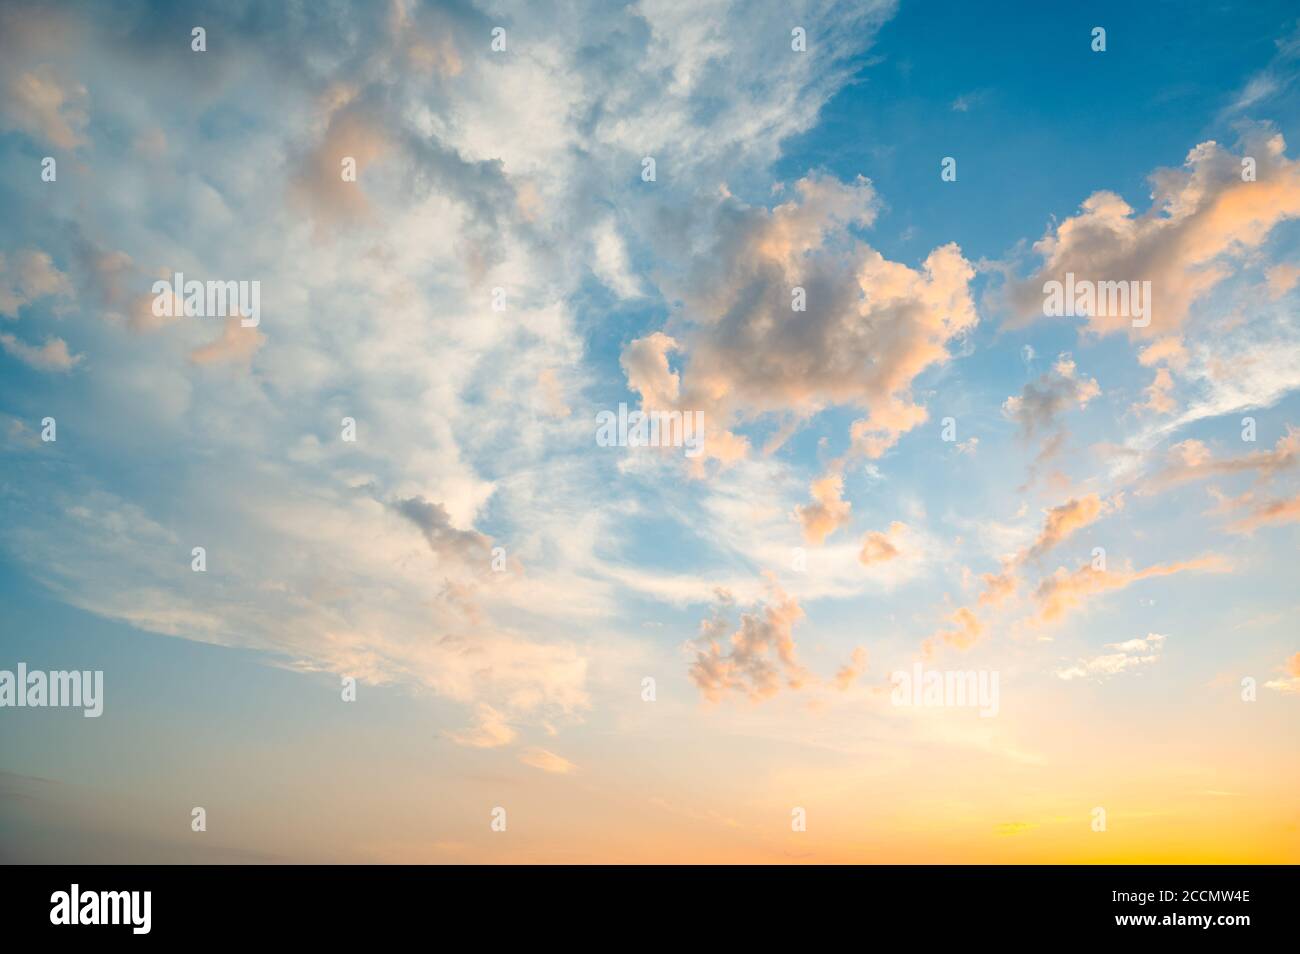 Schöner Sommerhimmel voller Wolken bei Sonnenuntergang zur goldenen Stunde. Interessante warme Farben am Horizont. Stockfoto